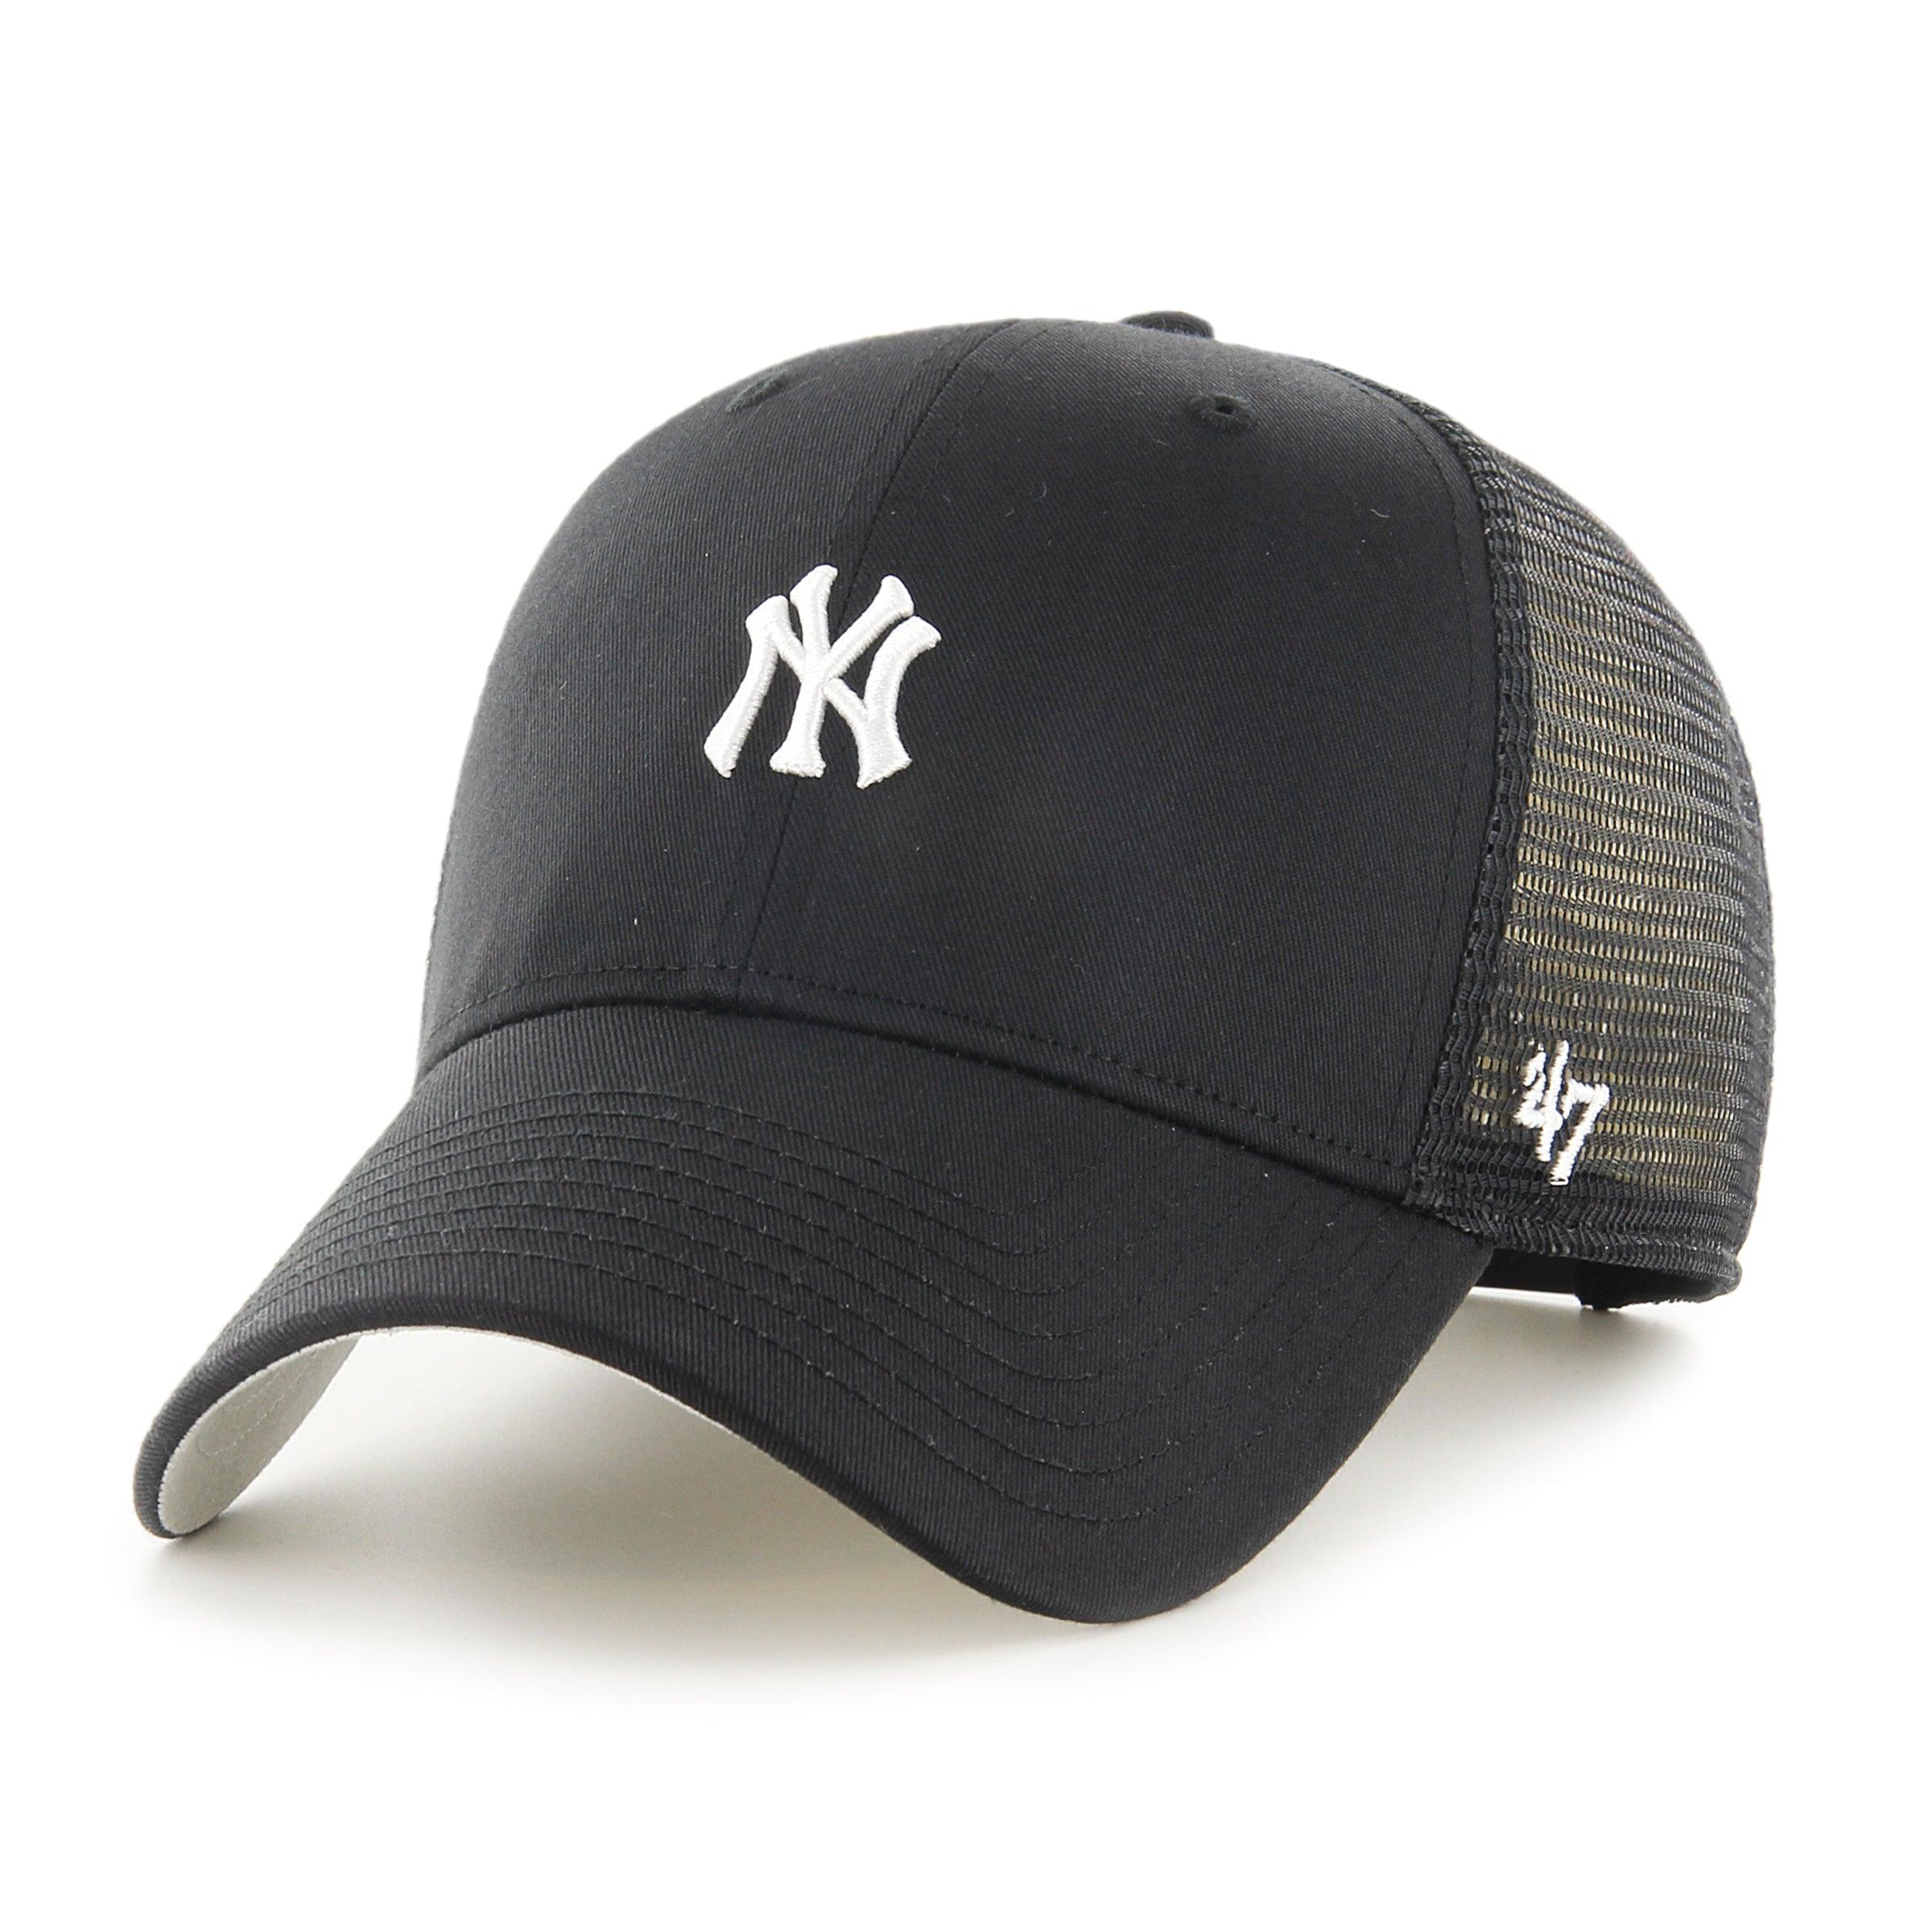 MLB NEW YORK YANKEES BASE RUNNER MESH '47 MVP BLACK CAP